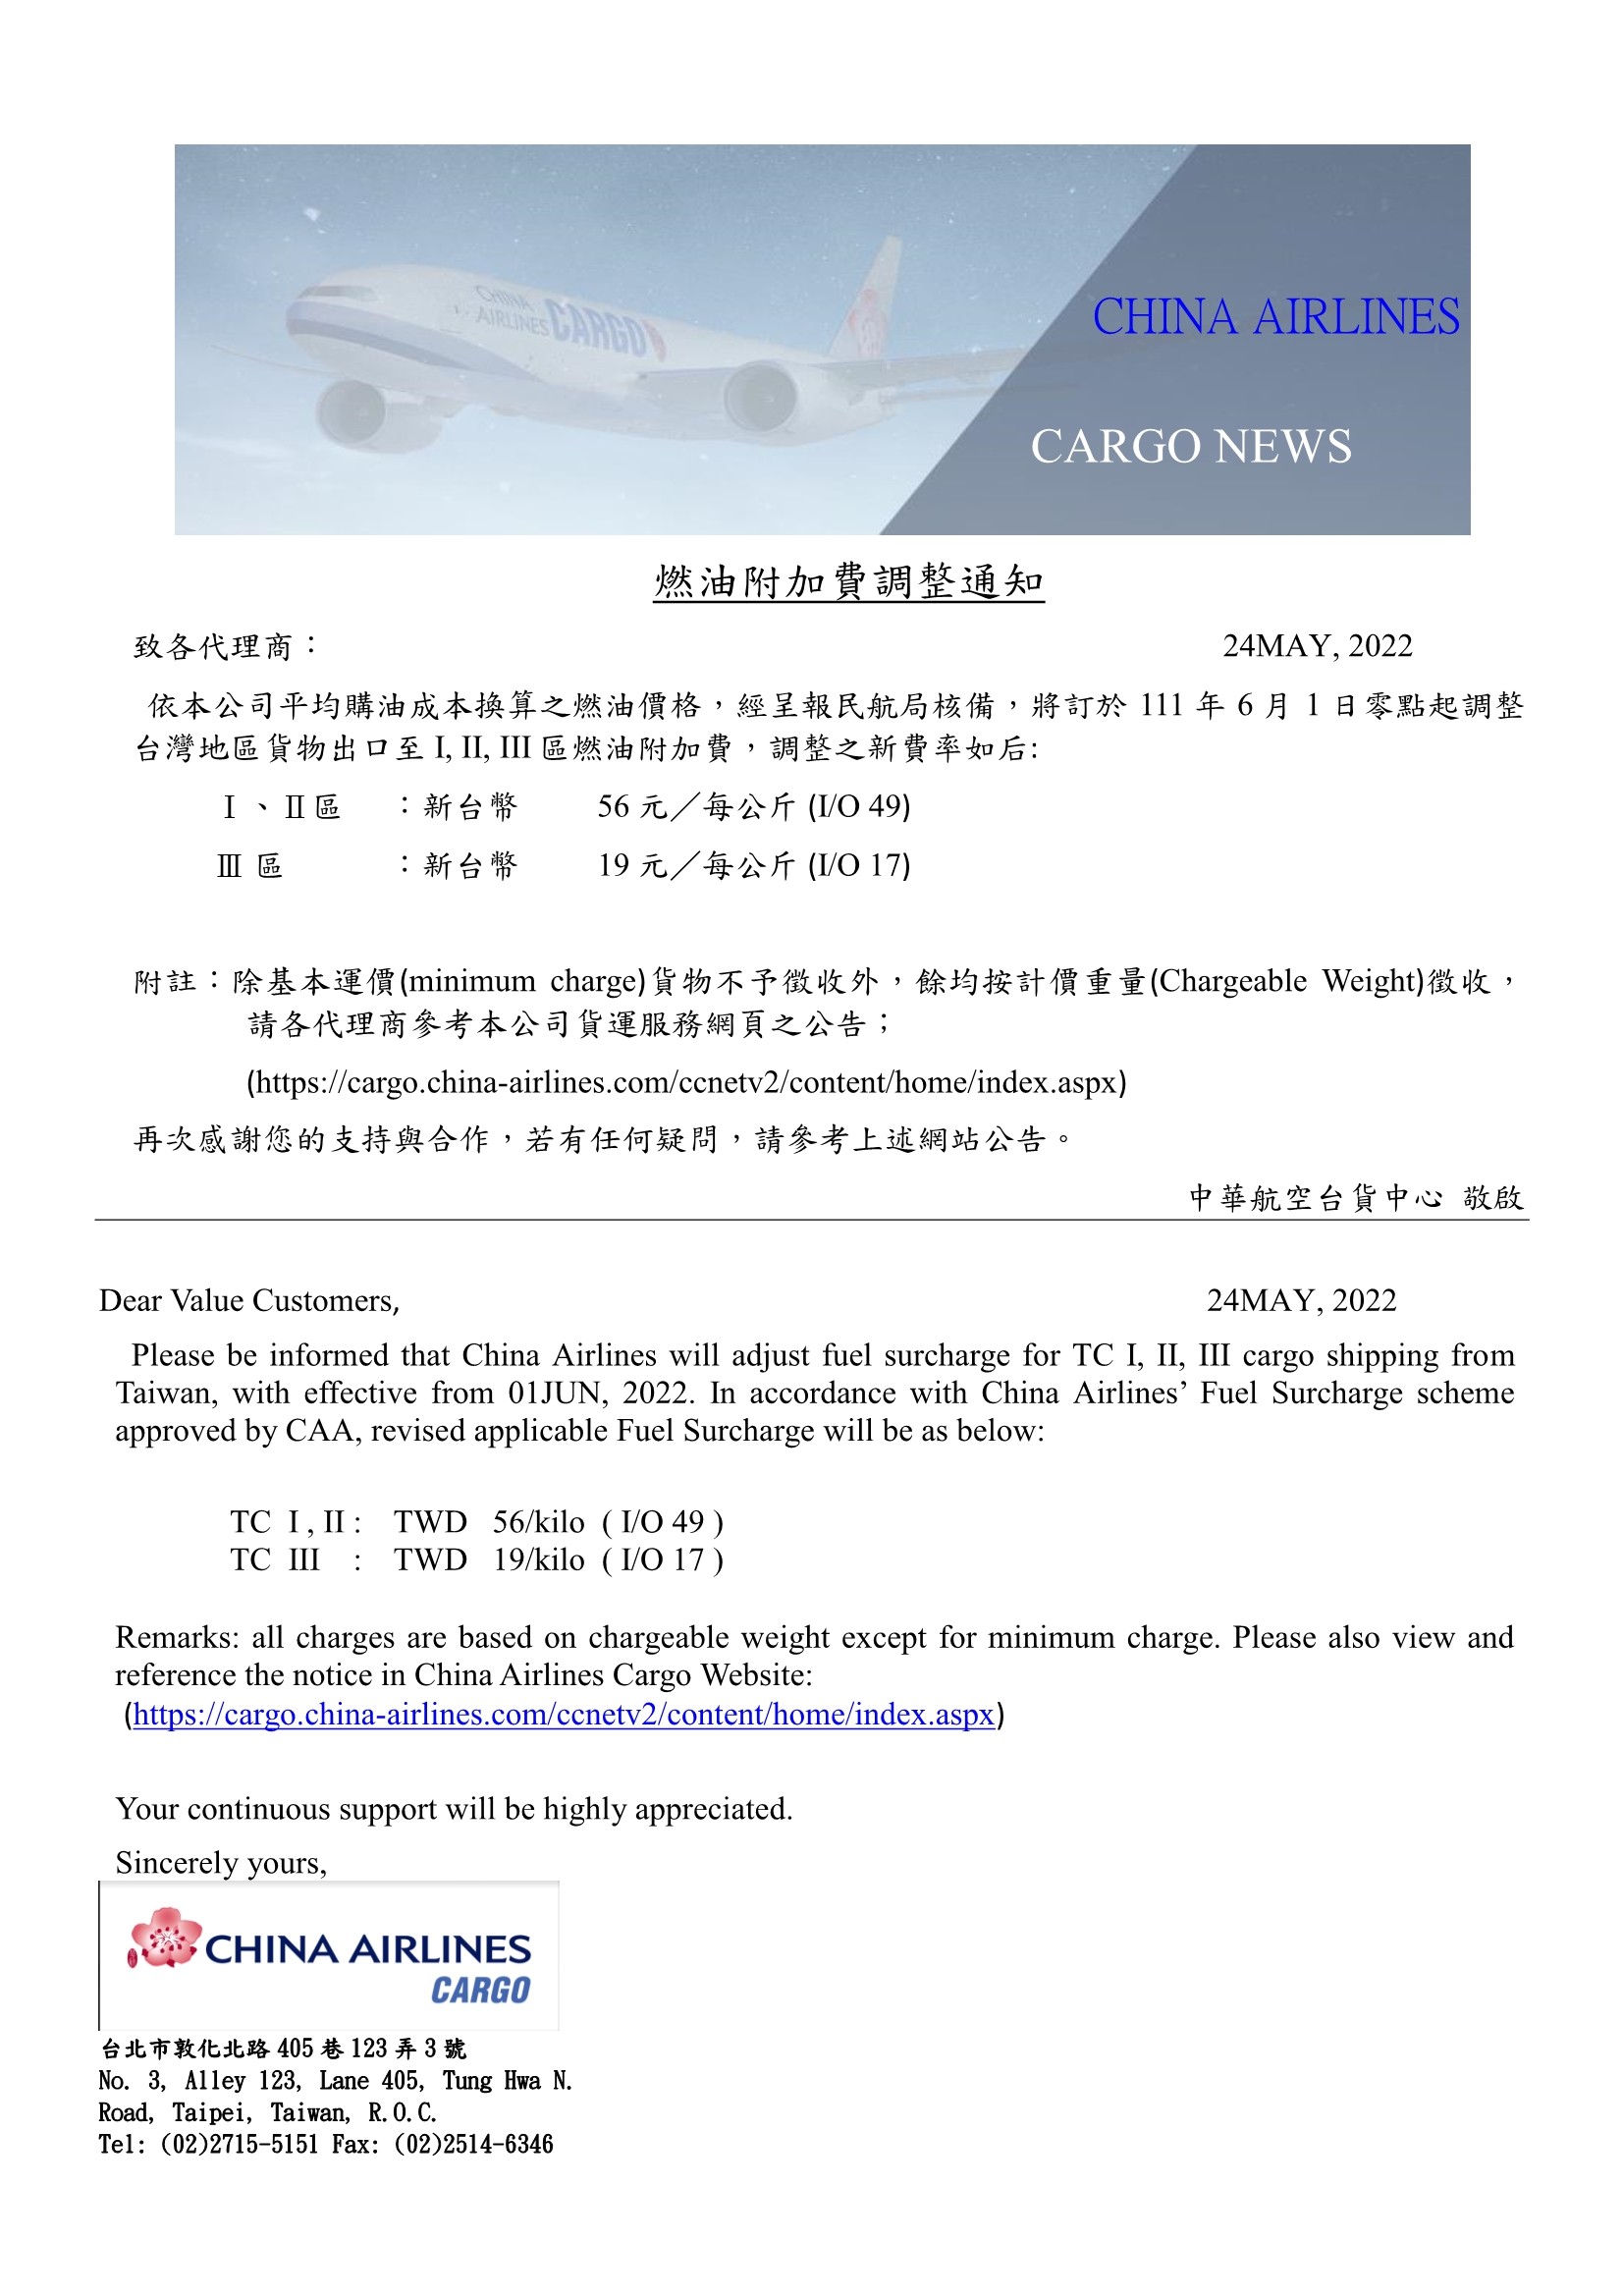 中華航空2022年6月1日台灣區貨運燃油附加費調整公告.jpg